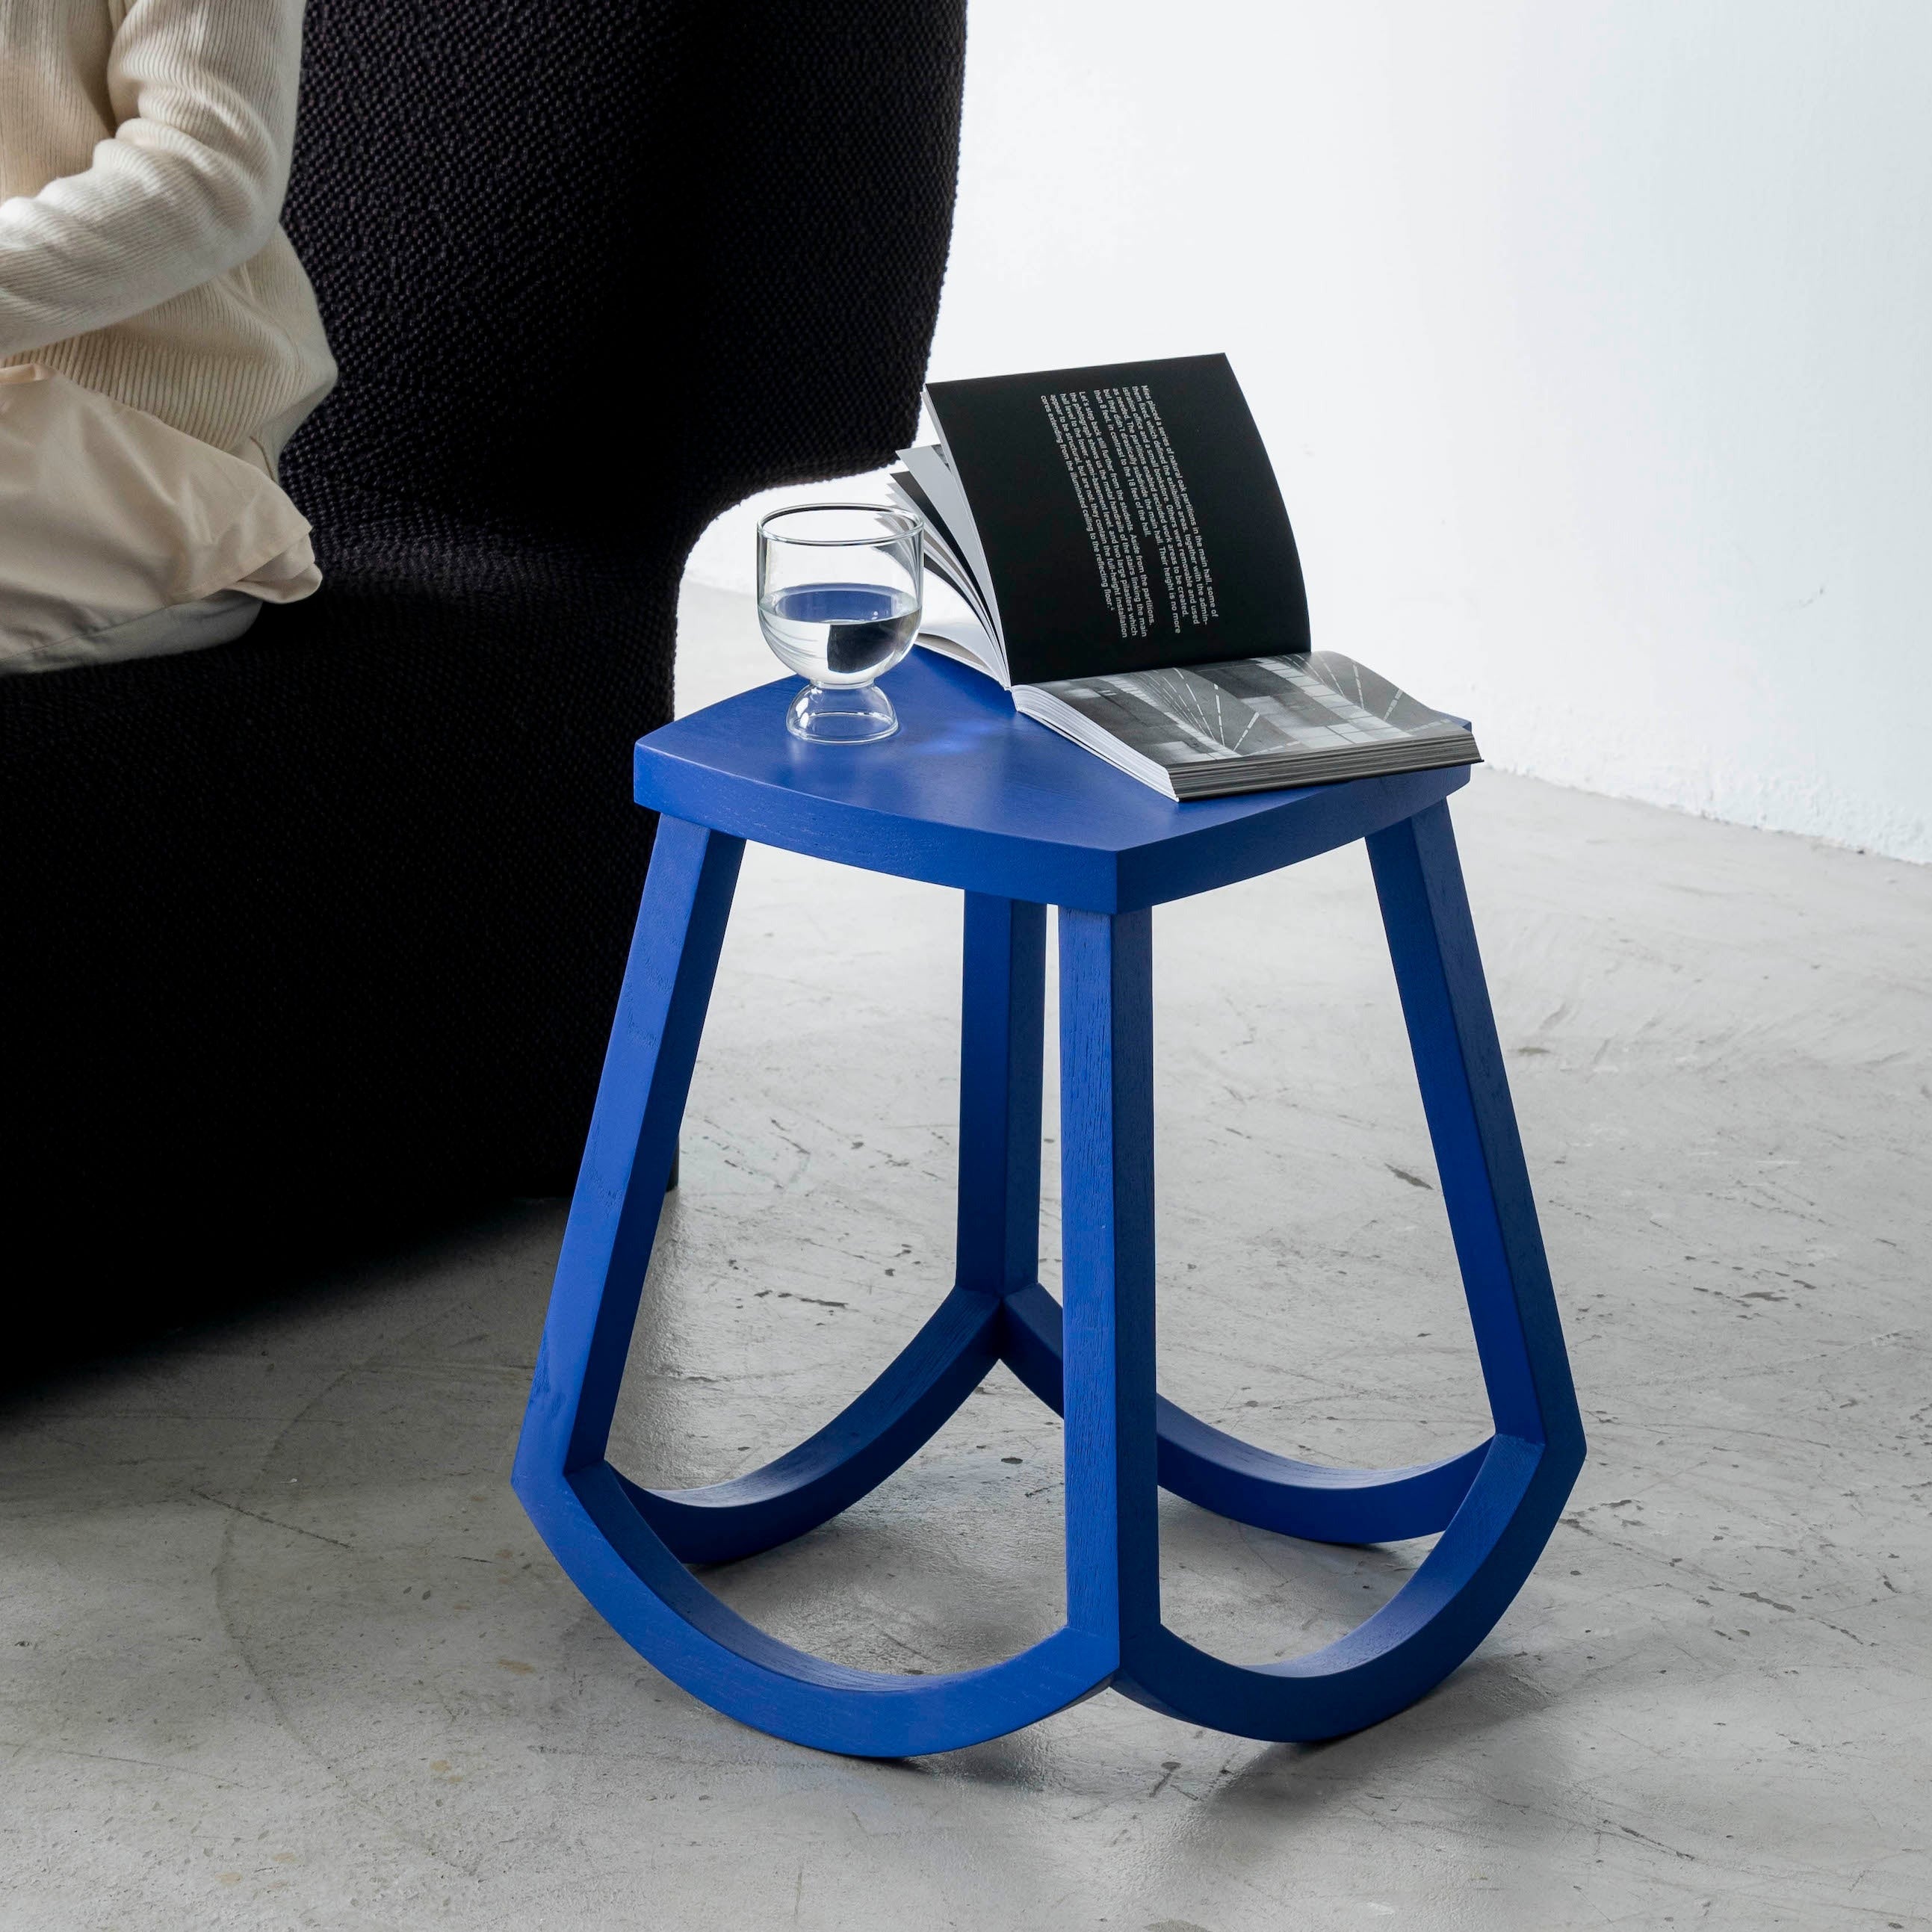 ITRUST STOOL Chair ziinlife Klein Blue